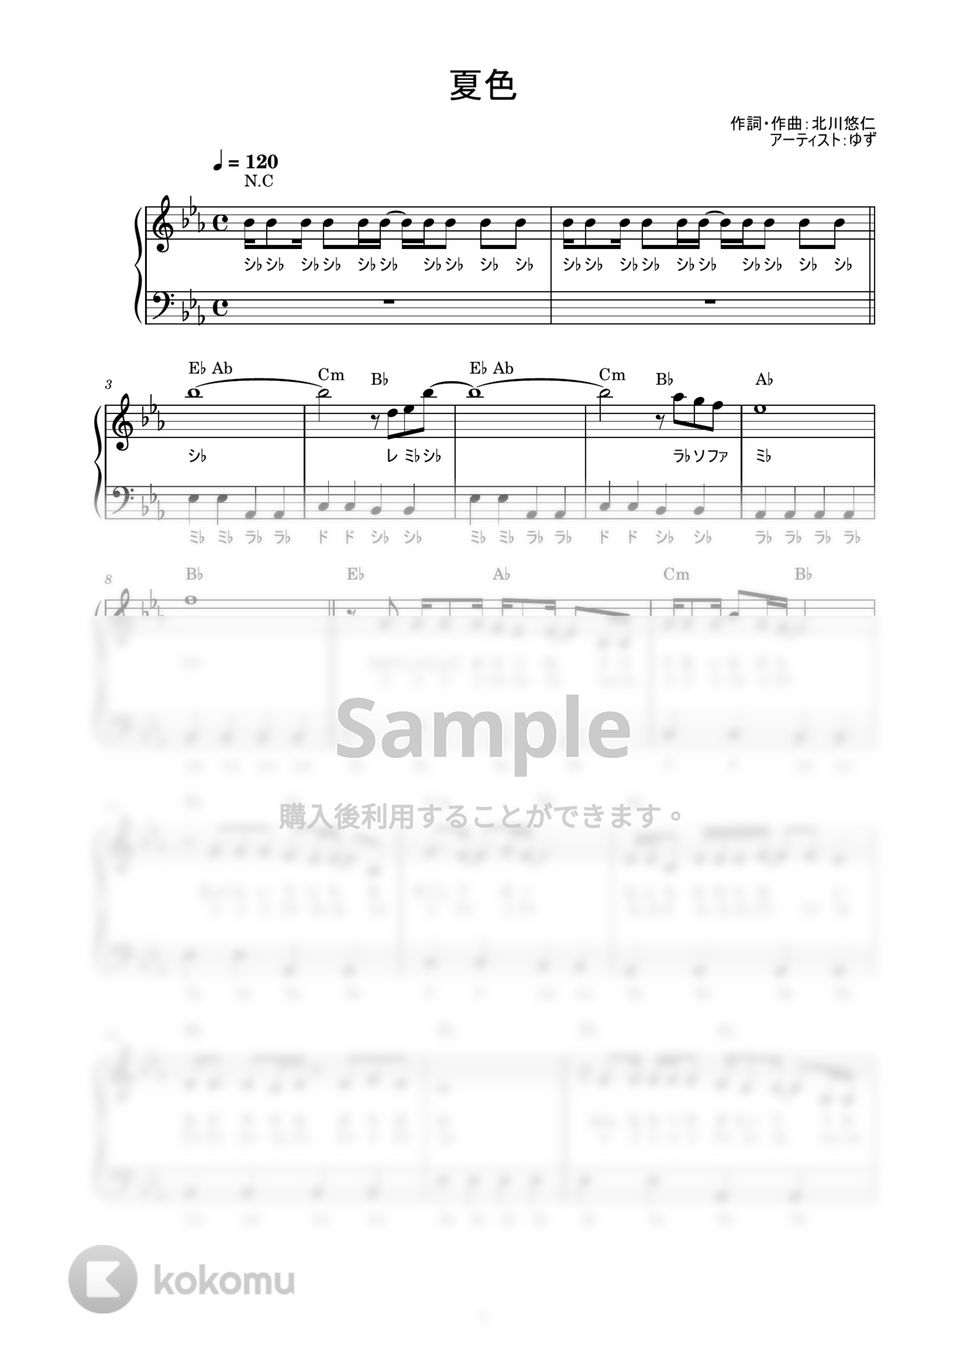 ゆず - 夏色 (かんたん / 歌詞付き / ドレミ付き / 初心者) by piano.tokyo